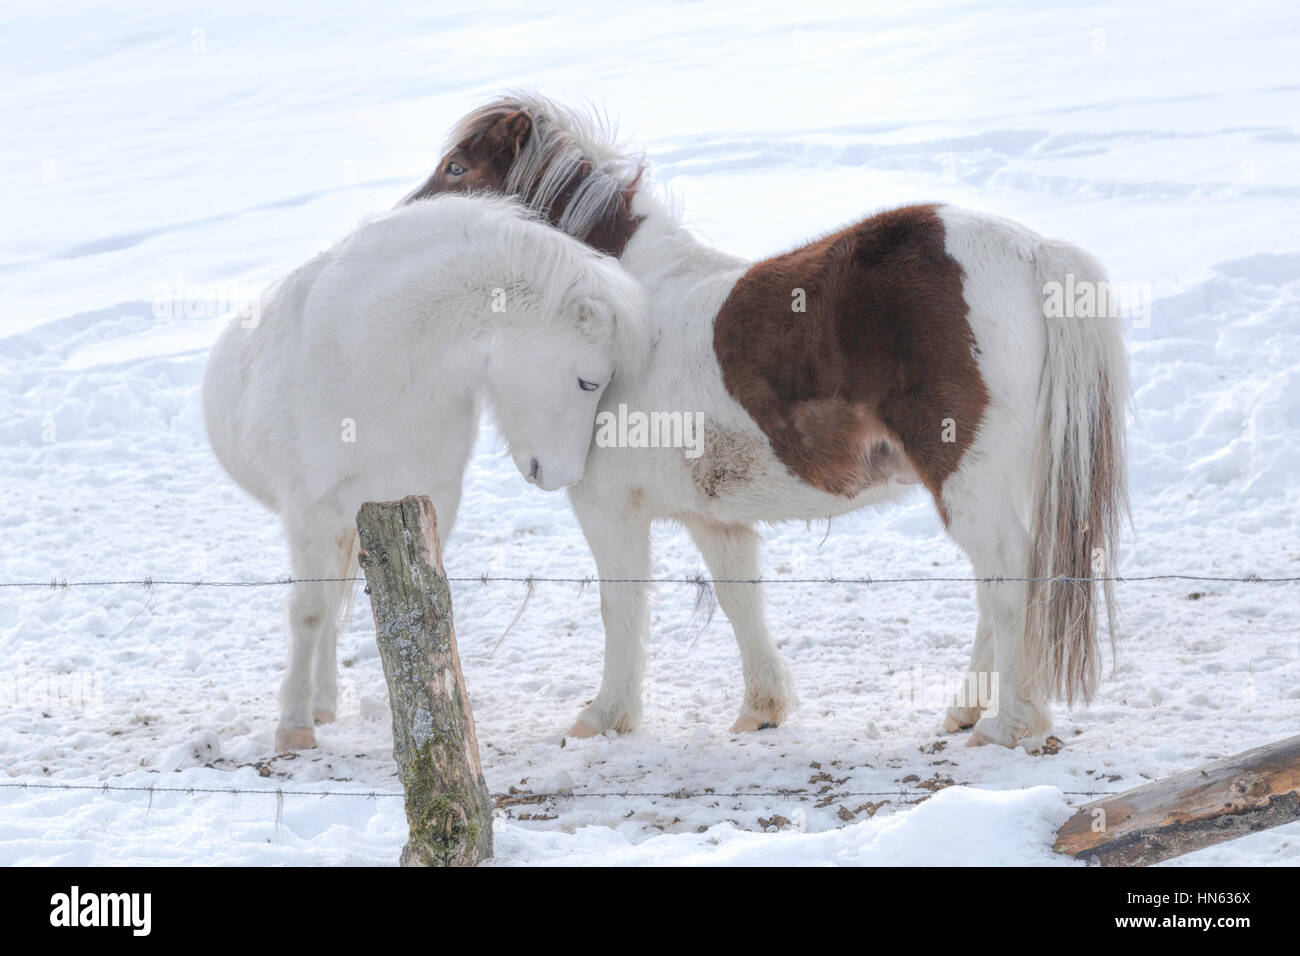 Zwei Shetland Pony Pferde umarmen einander in einem schneebedeckten Feld, Sauerland, Deutschland. Stockfoto